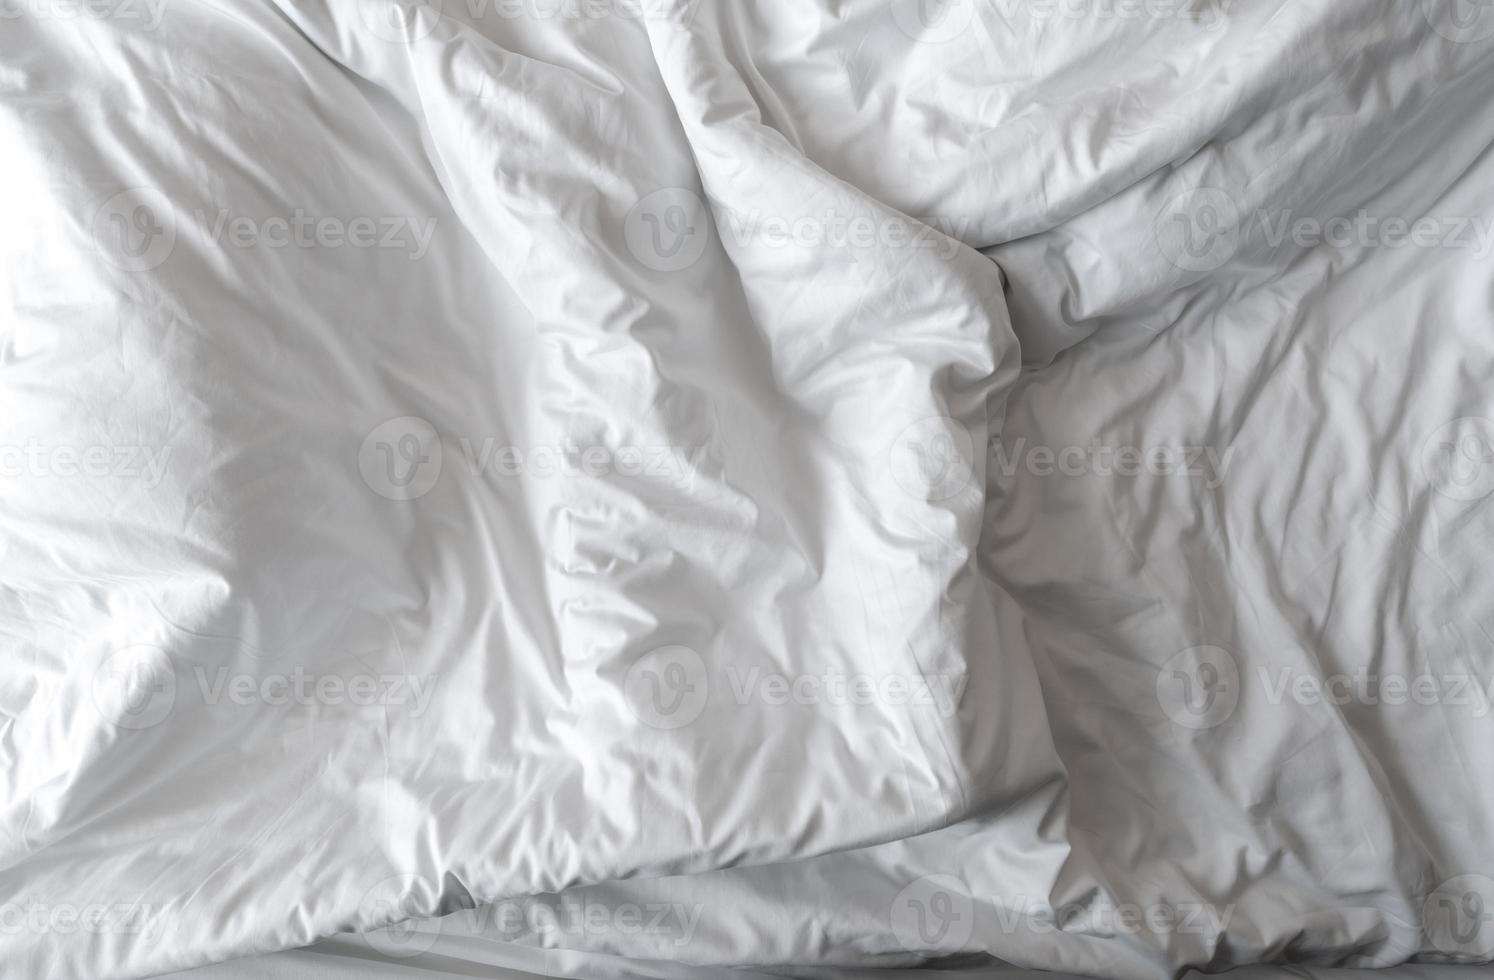 cobertor de linho branco no quarto do hotel. detalhe de close-up de cobertor branco bagunçado. cama confortável com edredom branco macio. durma bem com o conceito doméstico de roupa de cama de boa qualidade. cobertor branco enrugado. foto